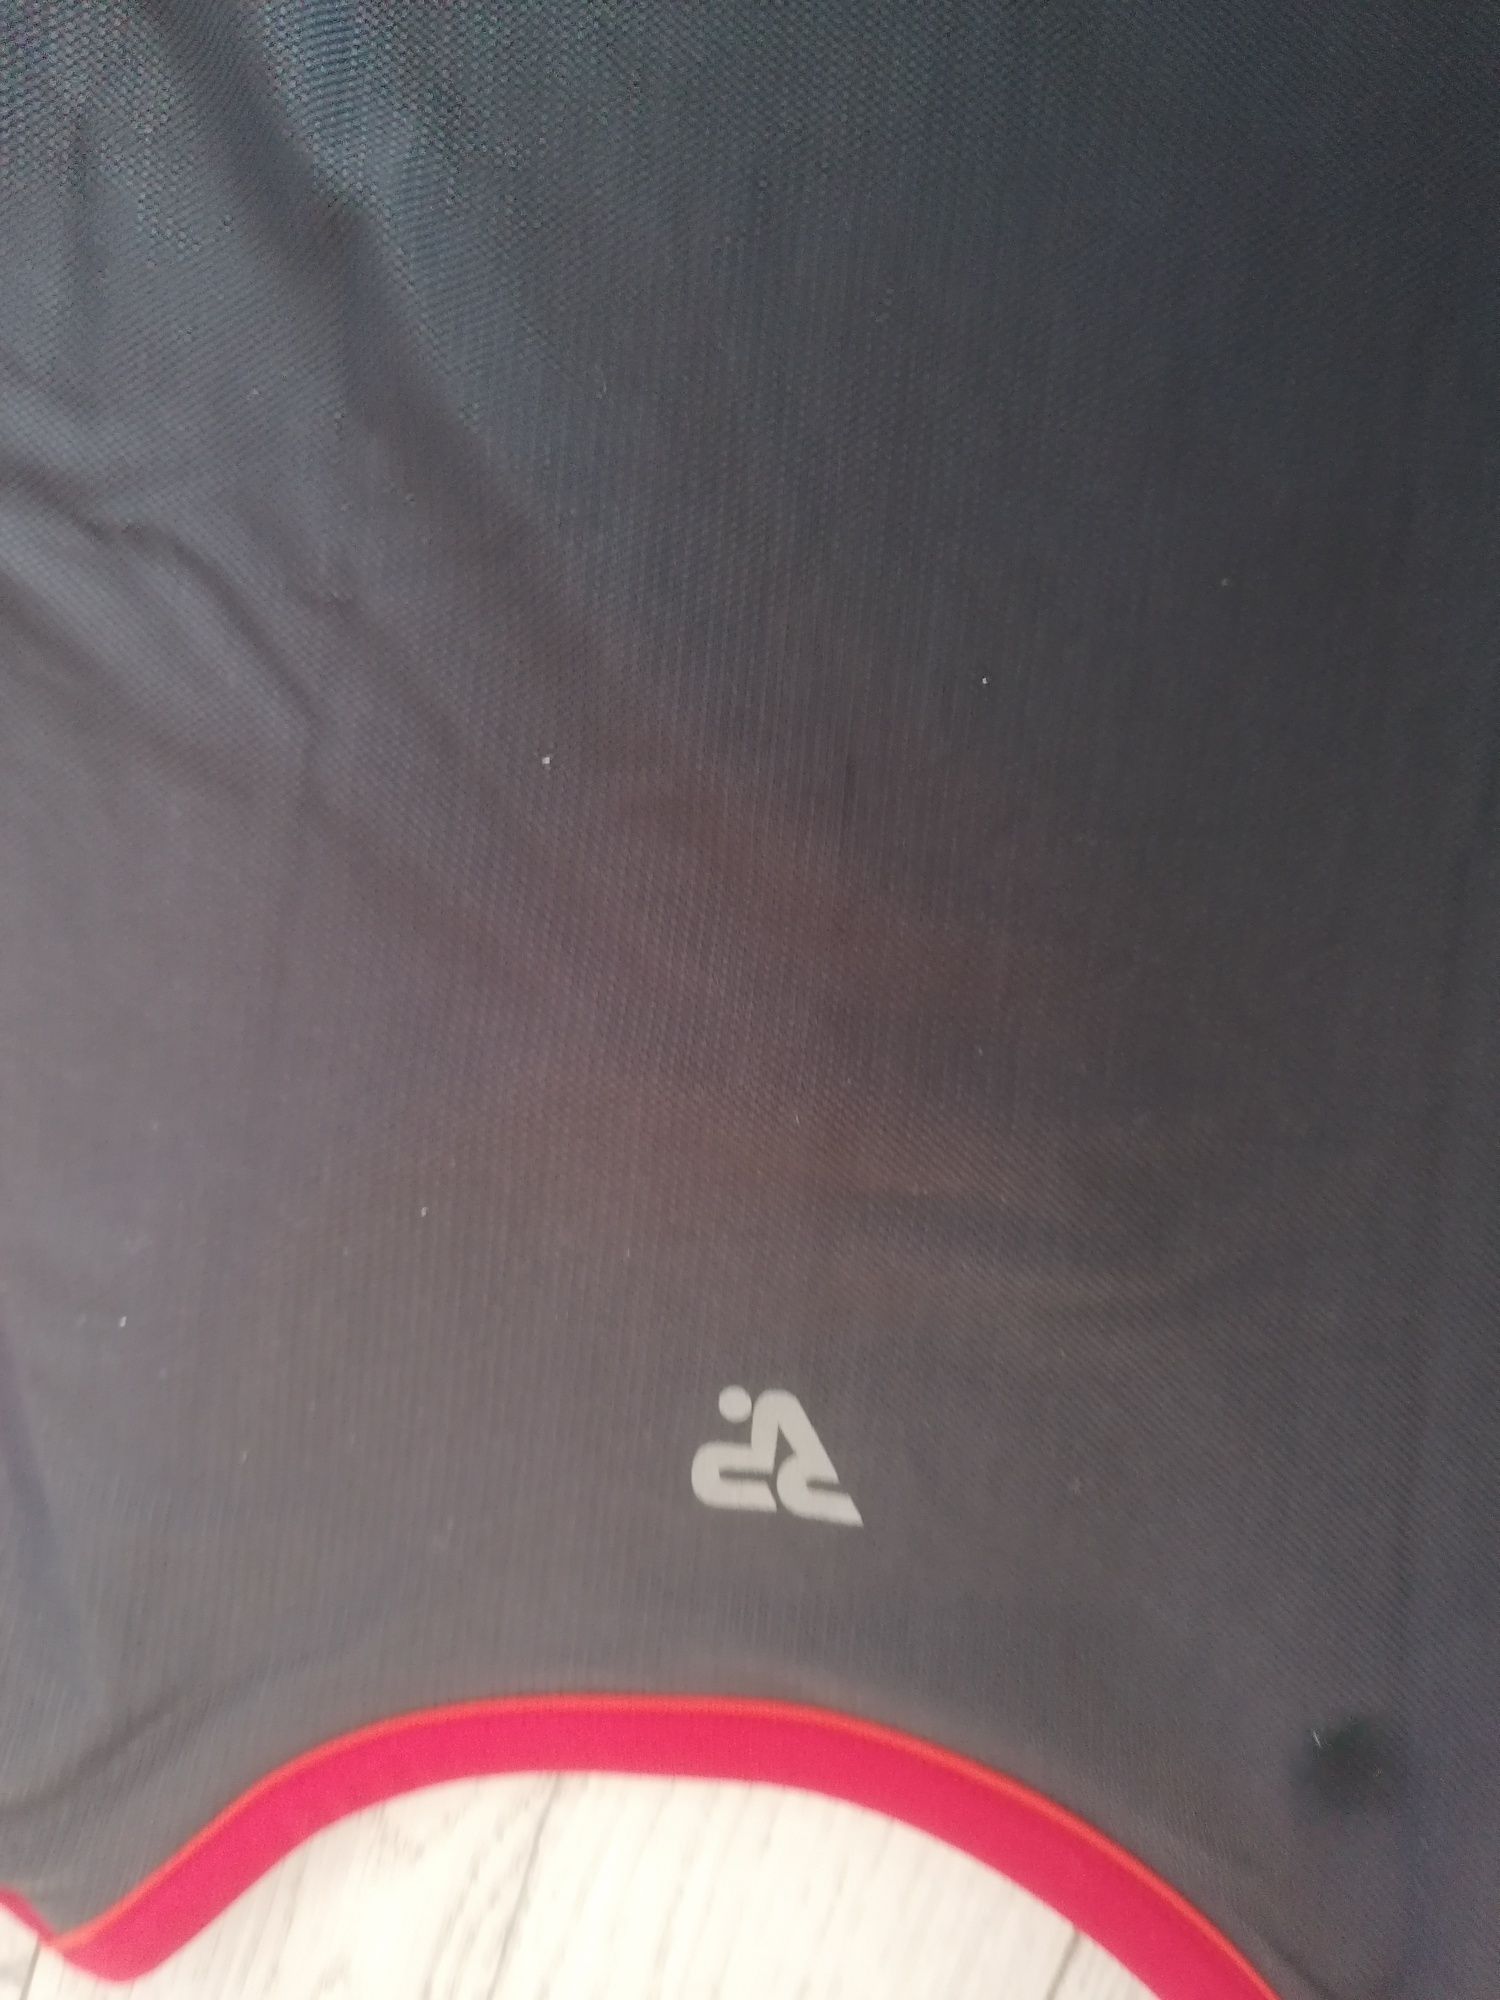 Koszulka spodenki sportowe na rower kolarskie bieganie L 42